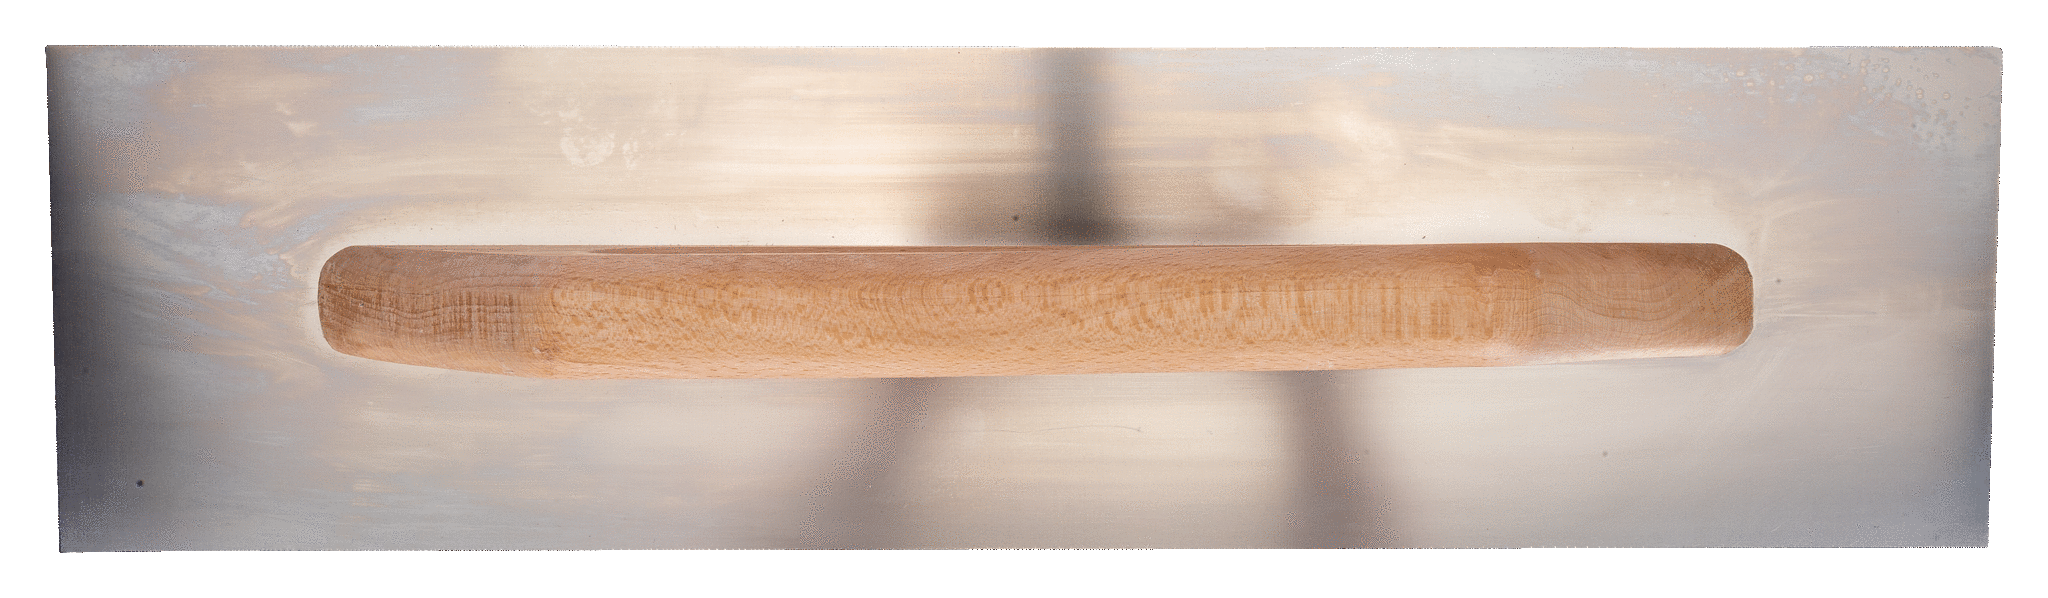 картинка Гладилки штукатурные с деревянной рукояткой BAHCO 204530140 от магазина "Элит-инструмент"